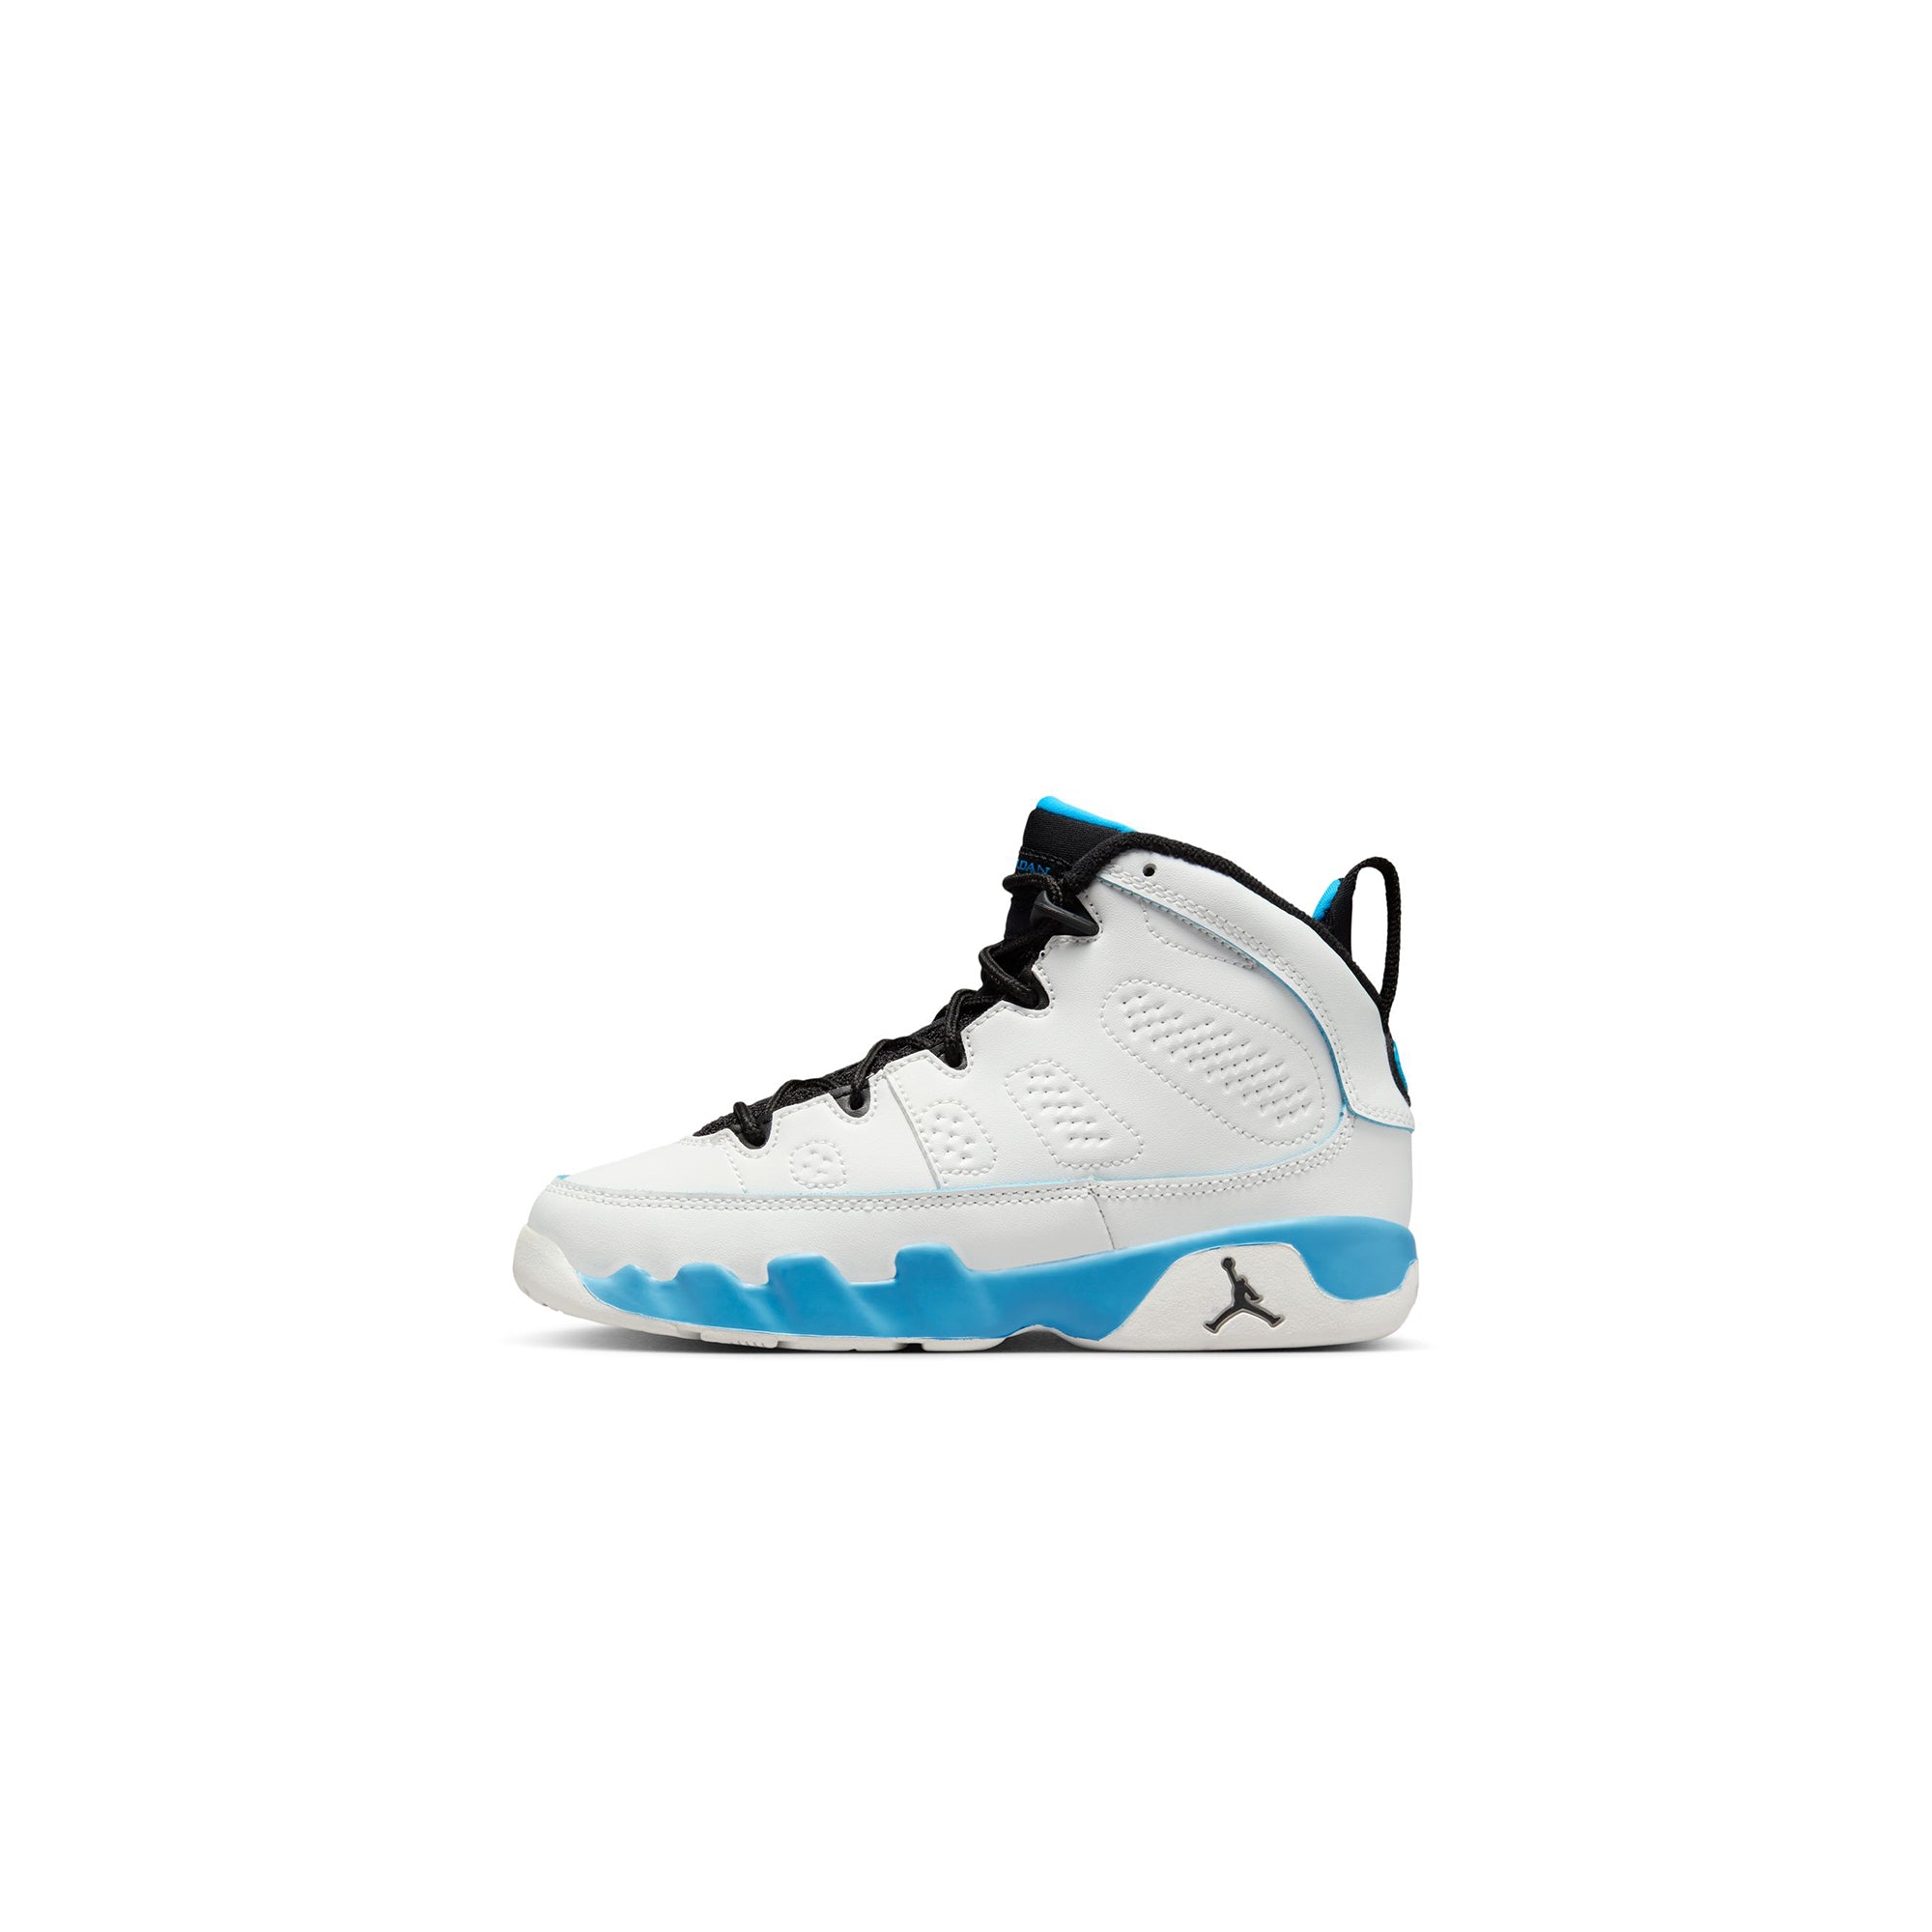 Air Jordan 9 Little Kids Retro Shoes